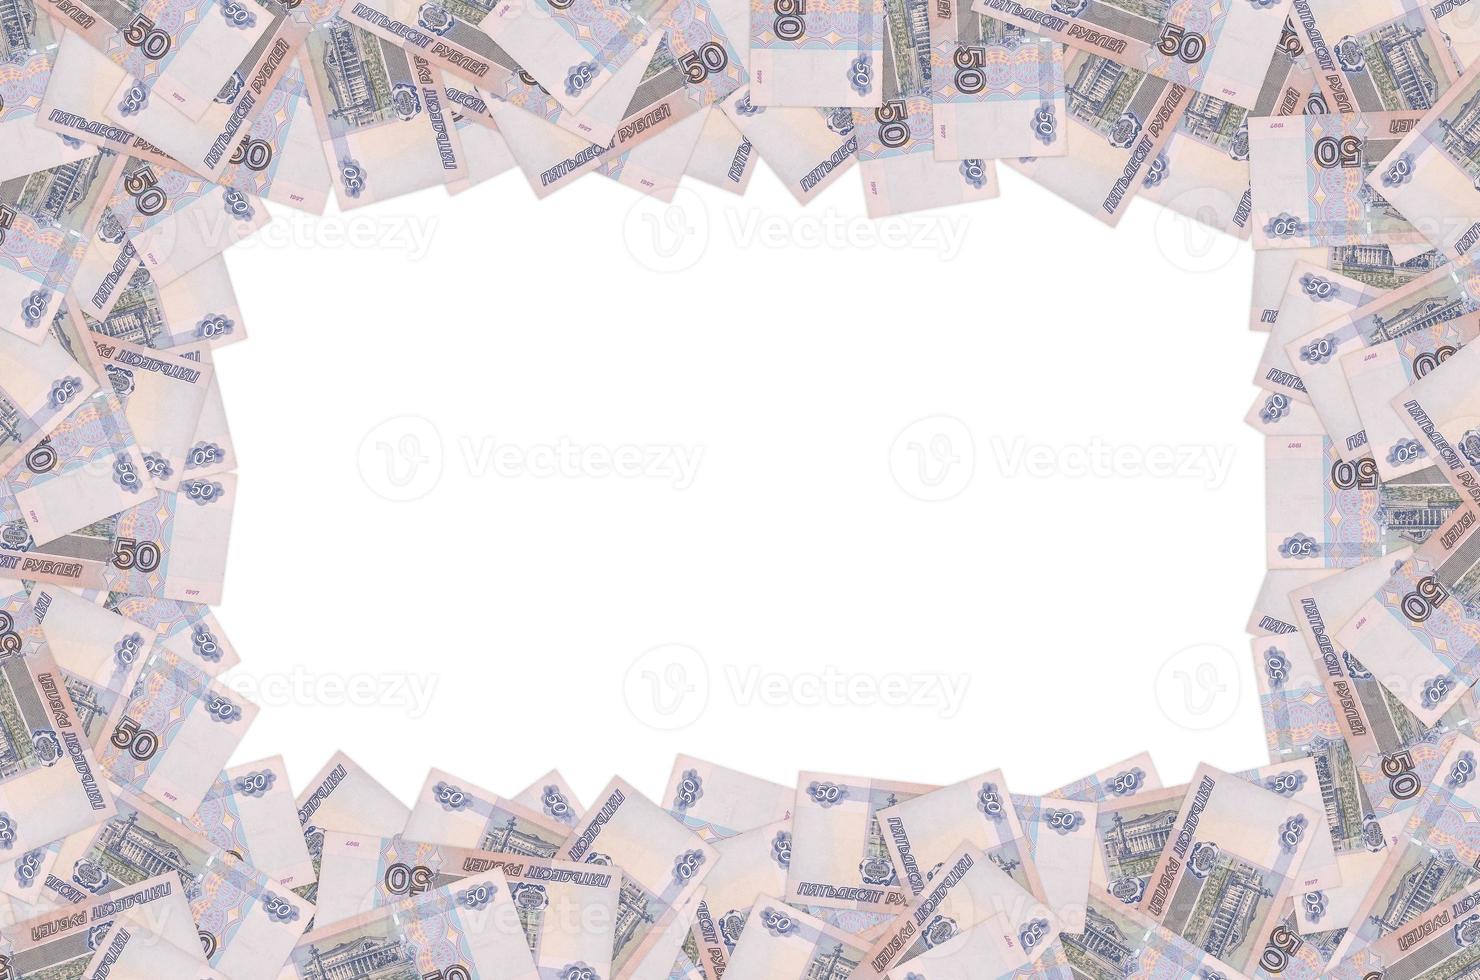 Russisch 50 roebel bankbiljet detailopname macro patroon. Rusland vijftig roebel geld Bill foto